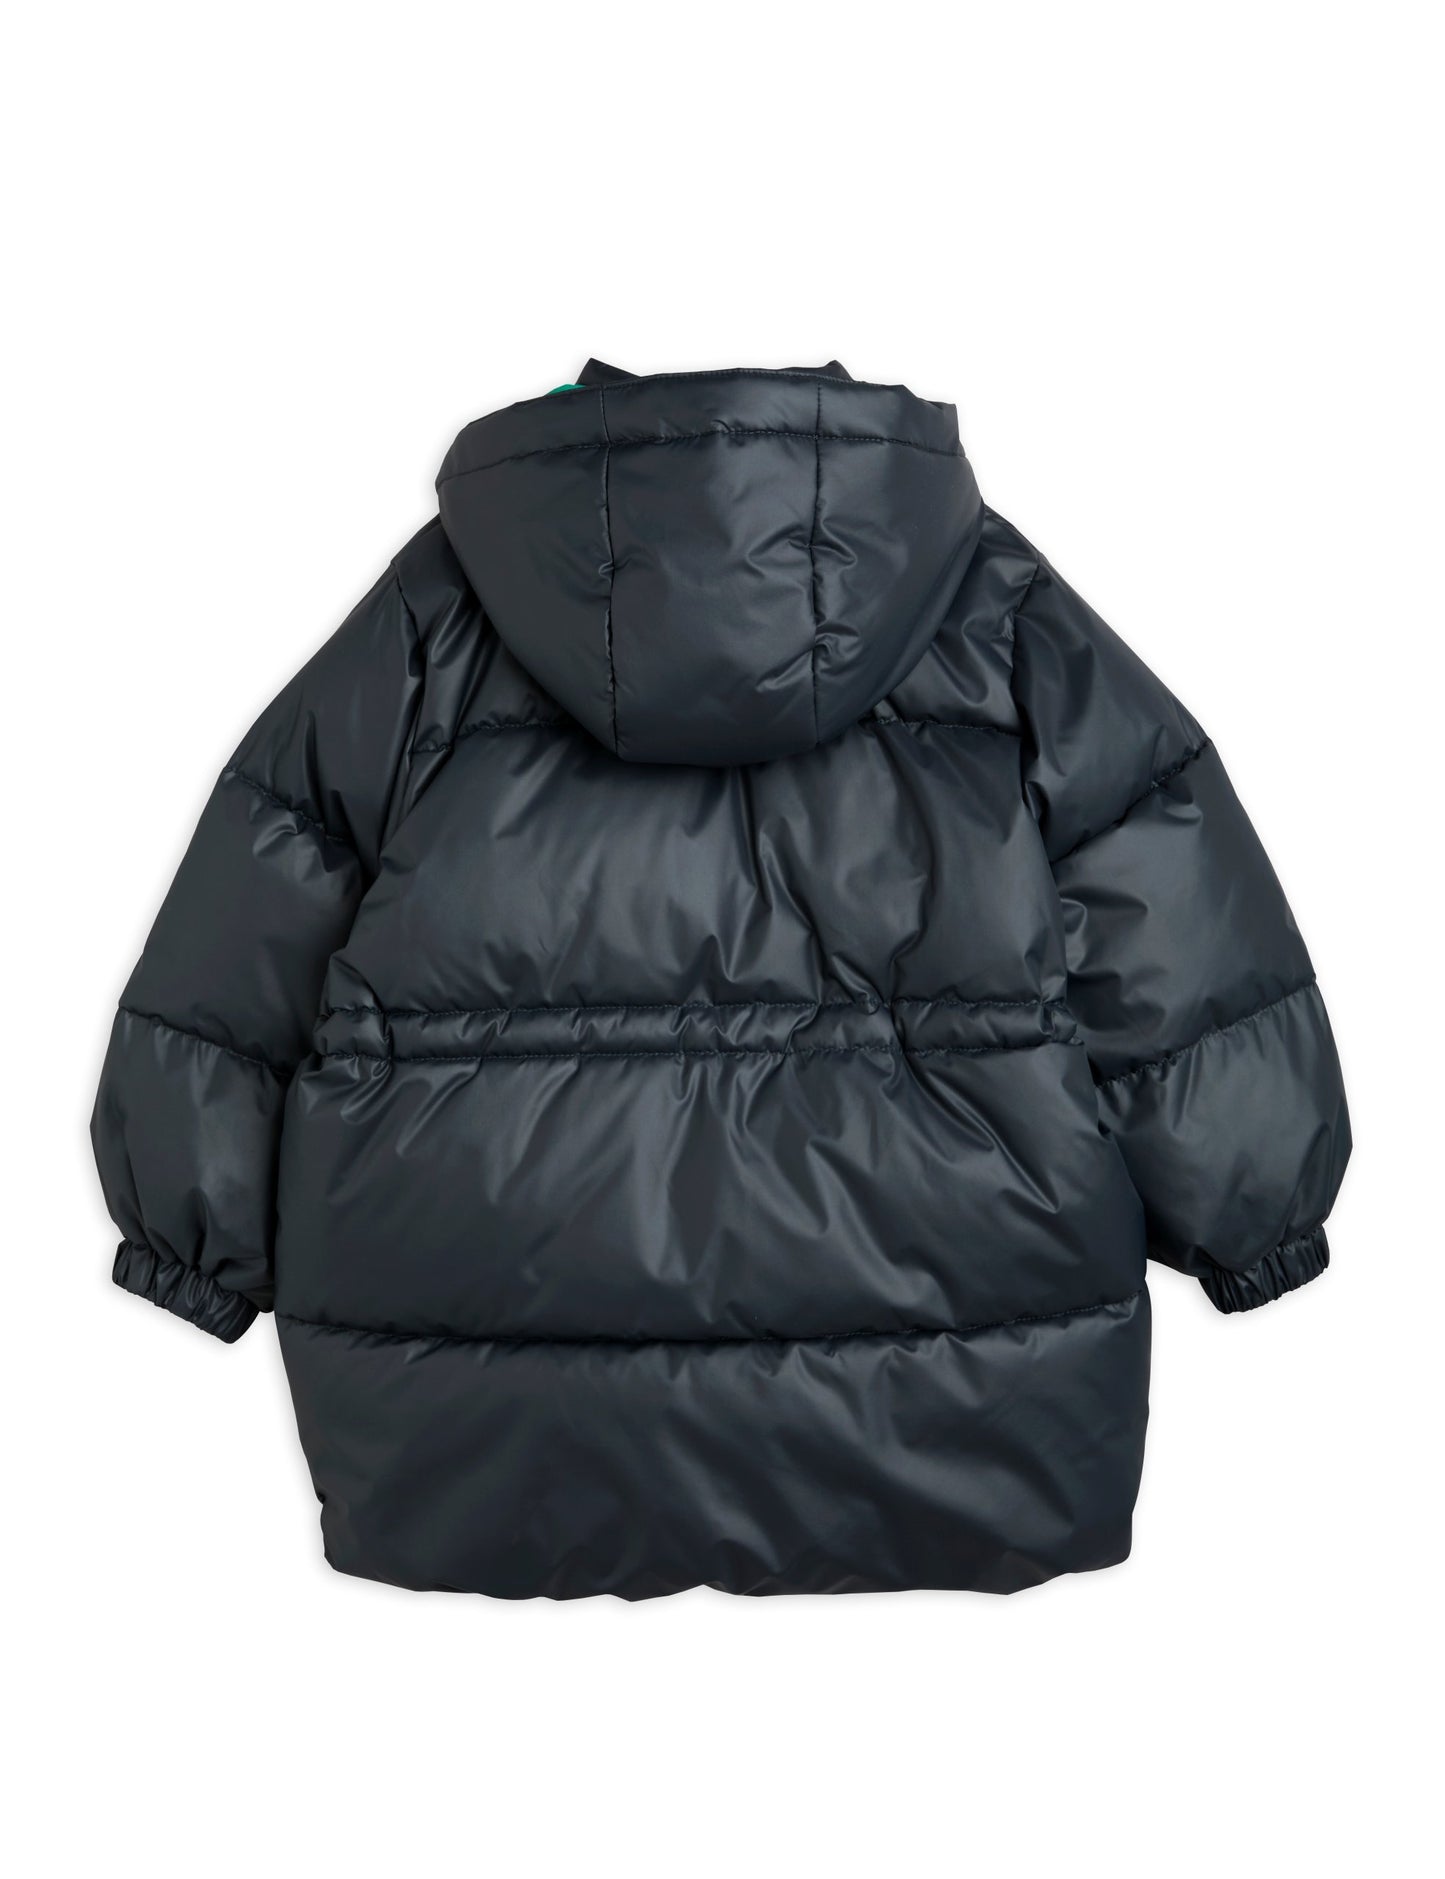 Heavy puffer jacket black